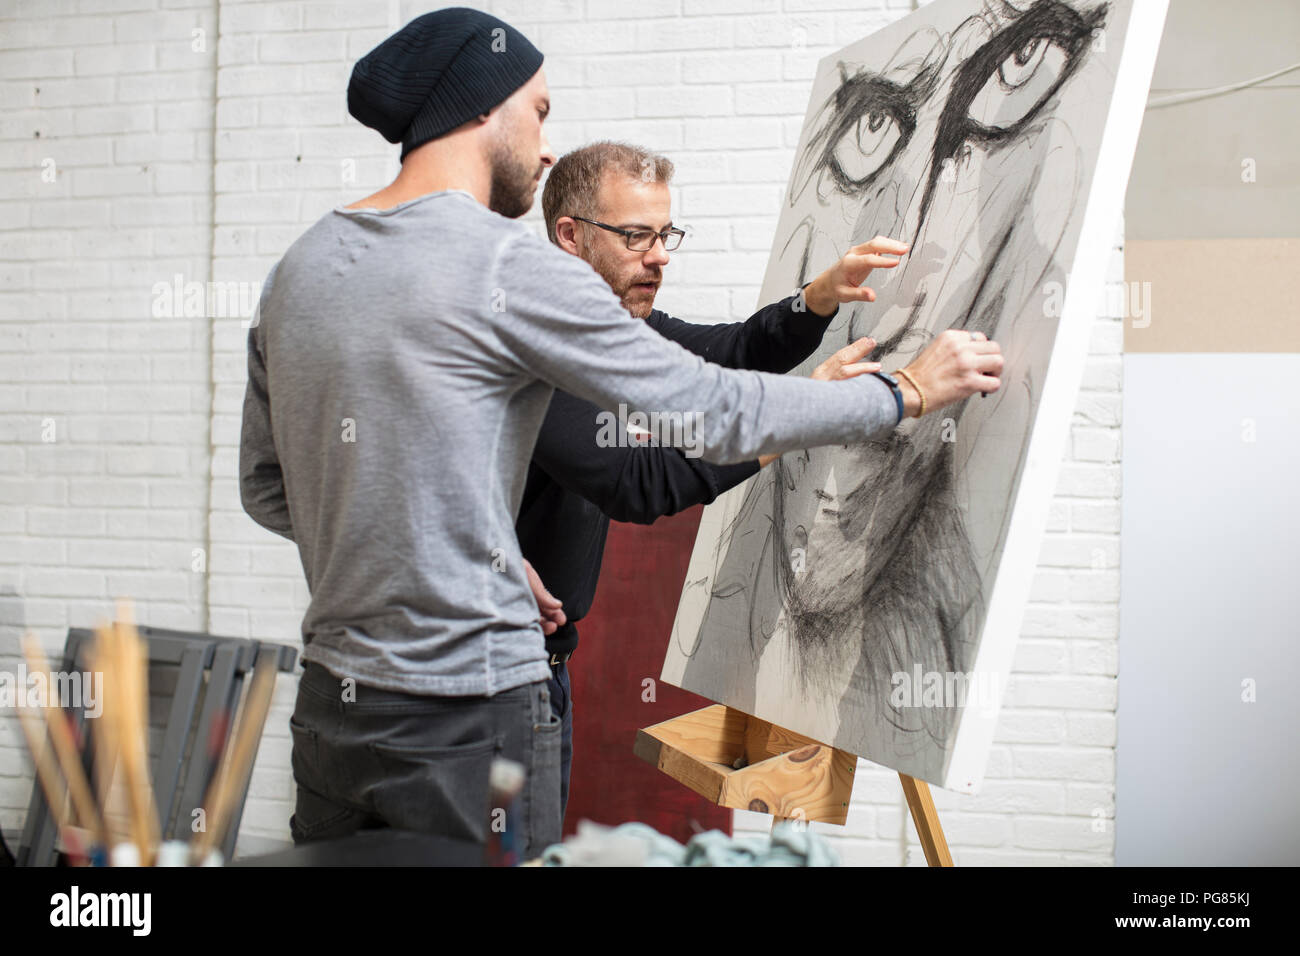 Hablando de dibujo del artista con el hombre en studio Foto de stock